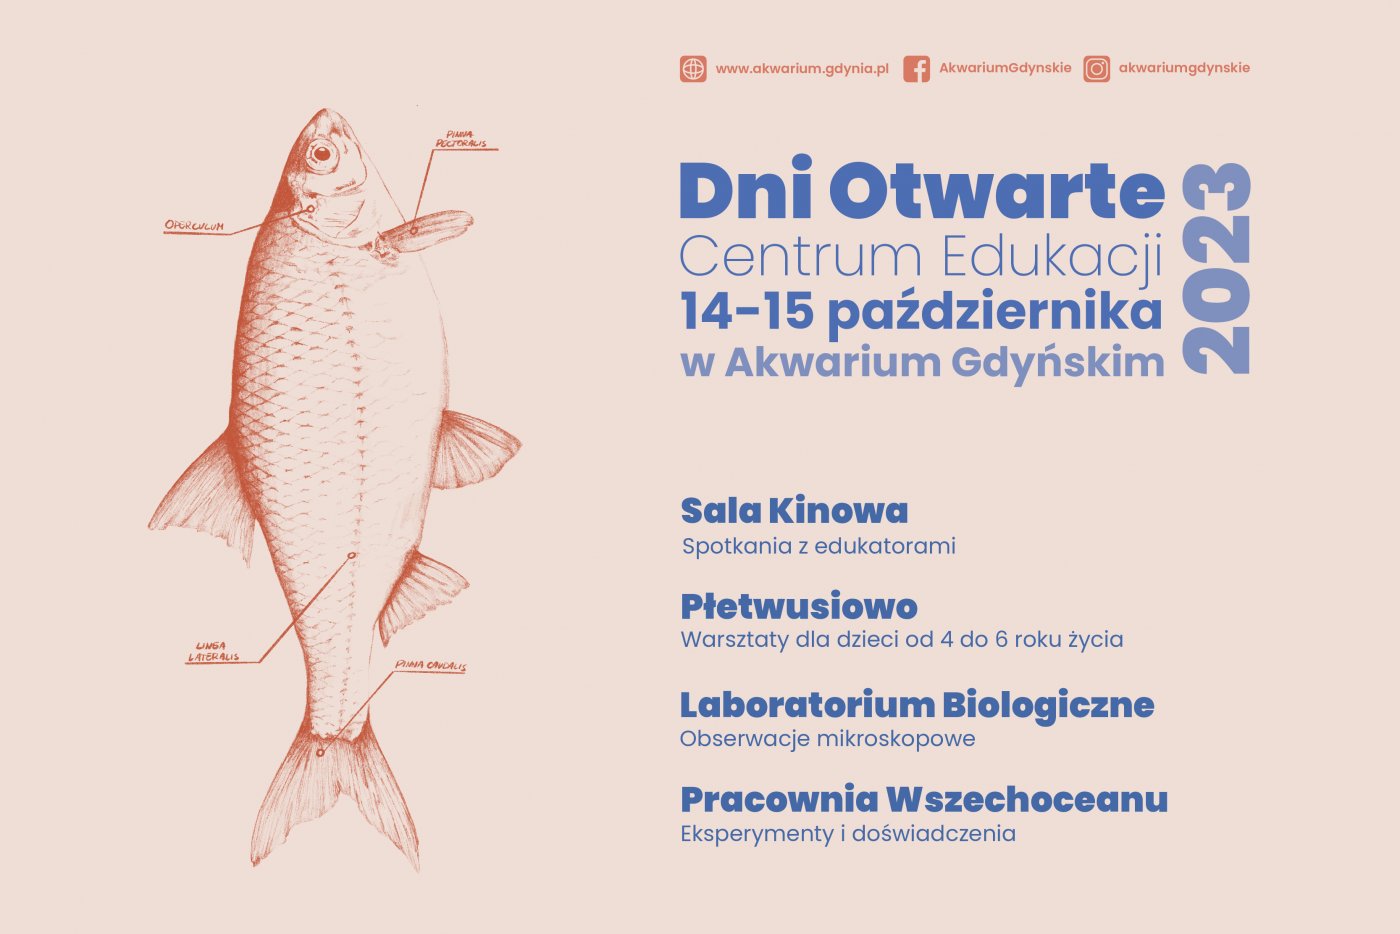 Świętujemy 25 lat edukacji w Akwarium Gdyńskim! Mat. prasowe Akwarium Gdyńskiego